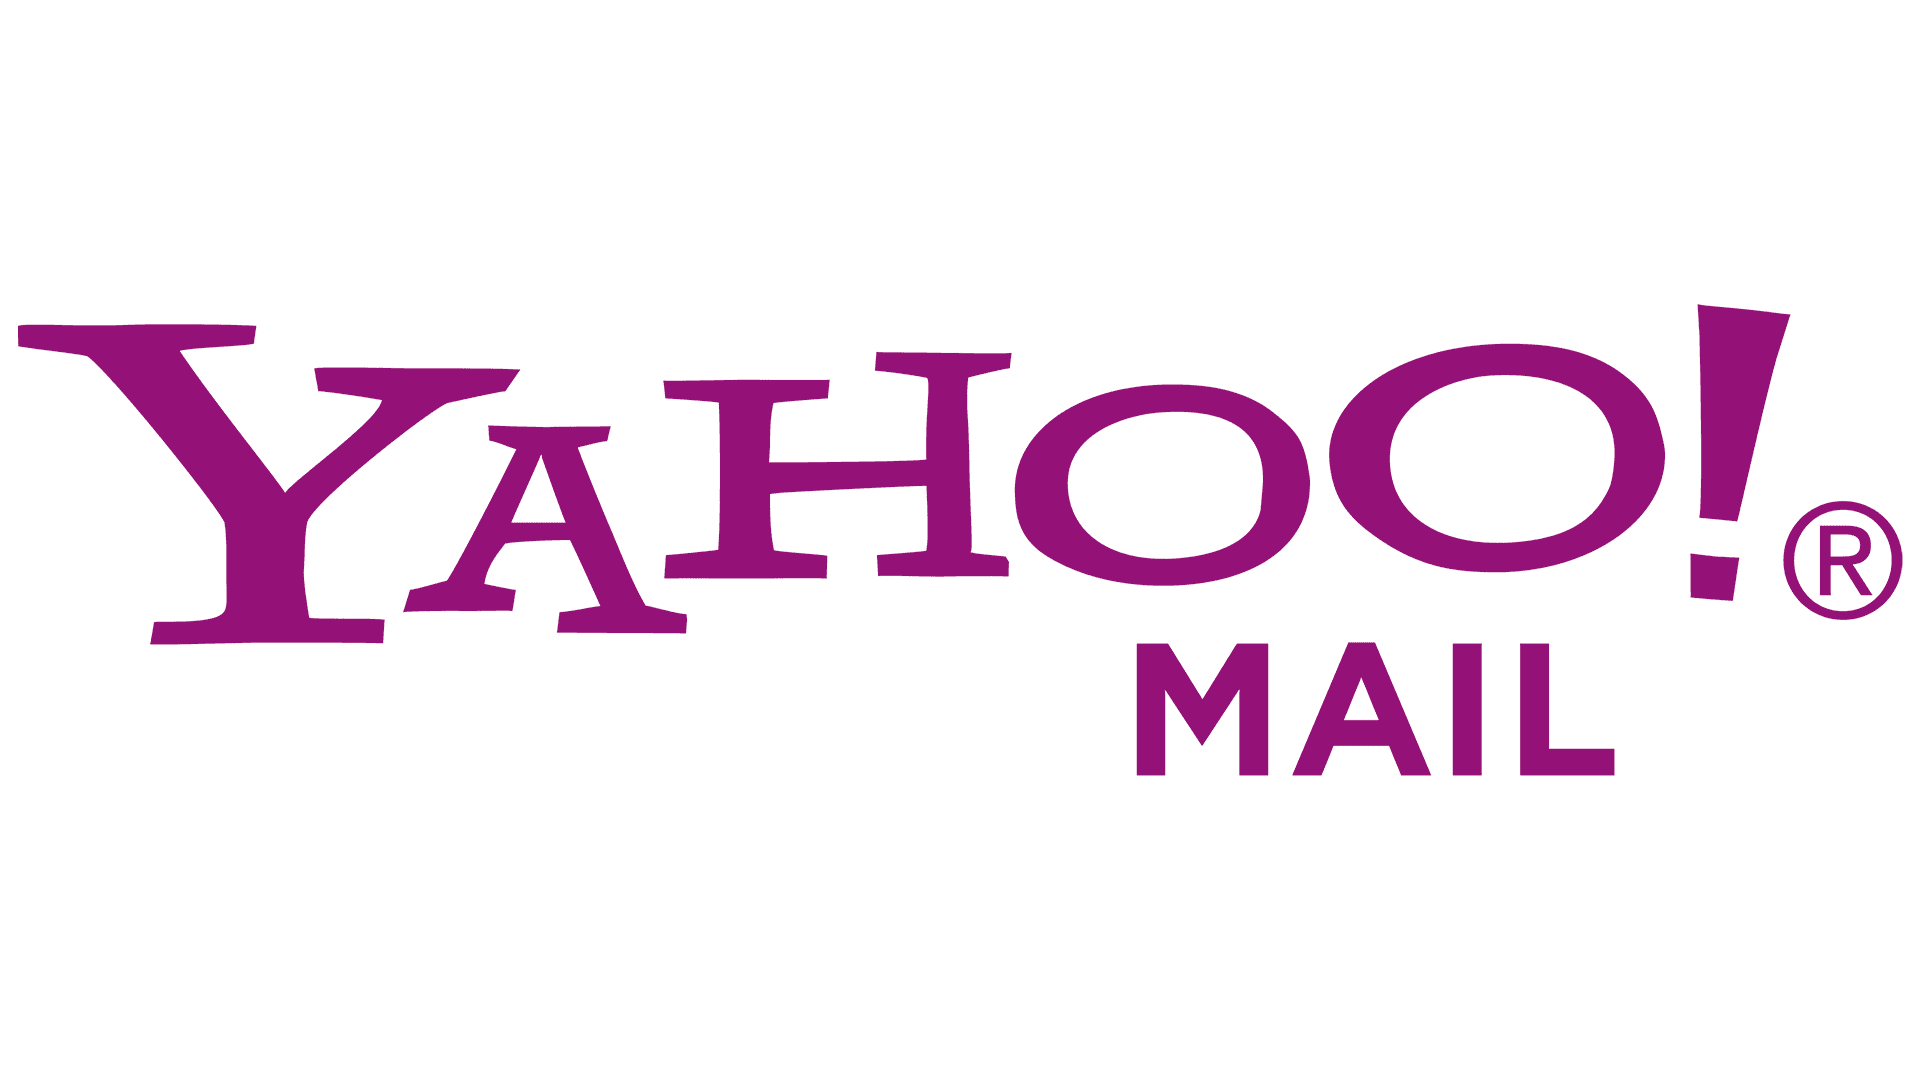 Yahoo Mail Logo Logo, zeichen, emblem, symbol. Geschichte und Bedeutung